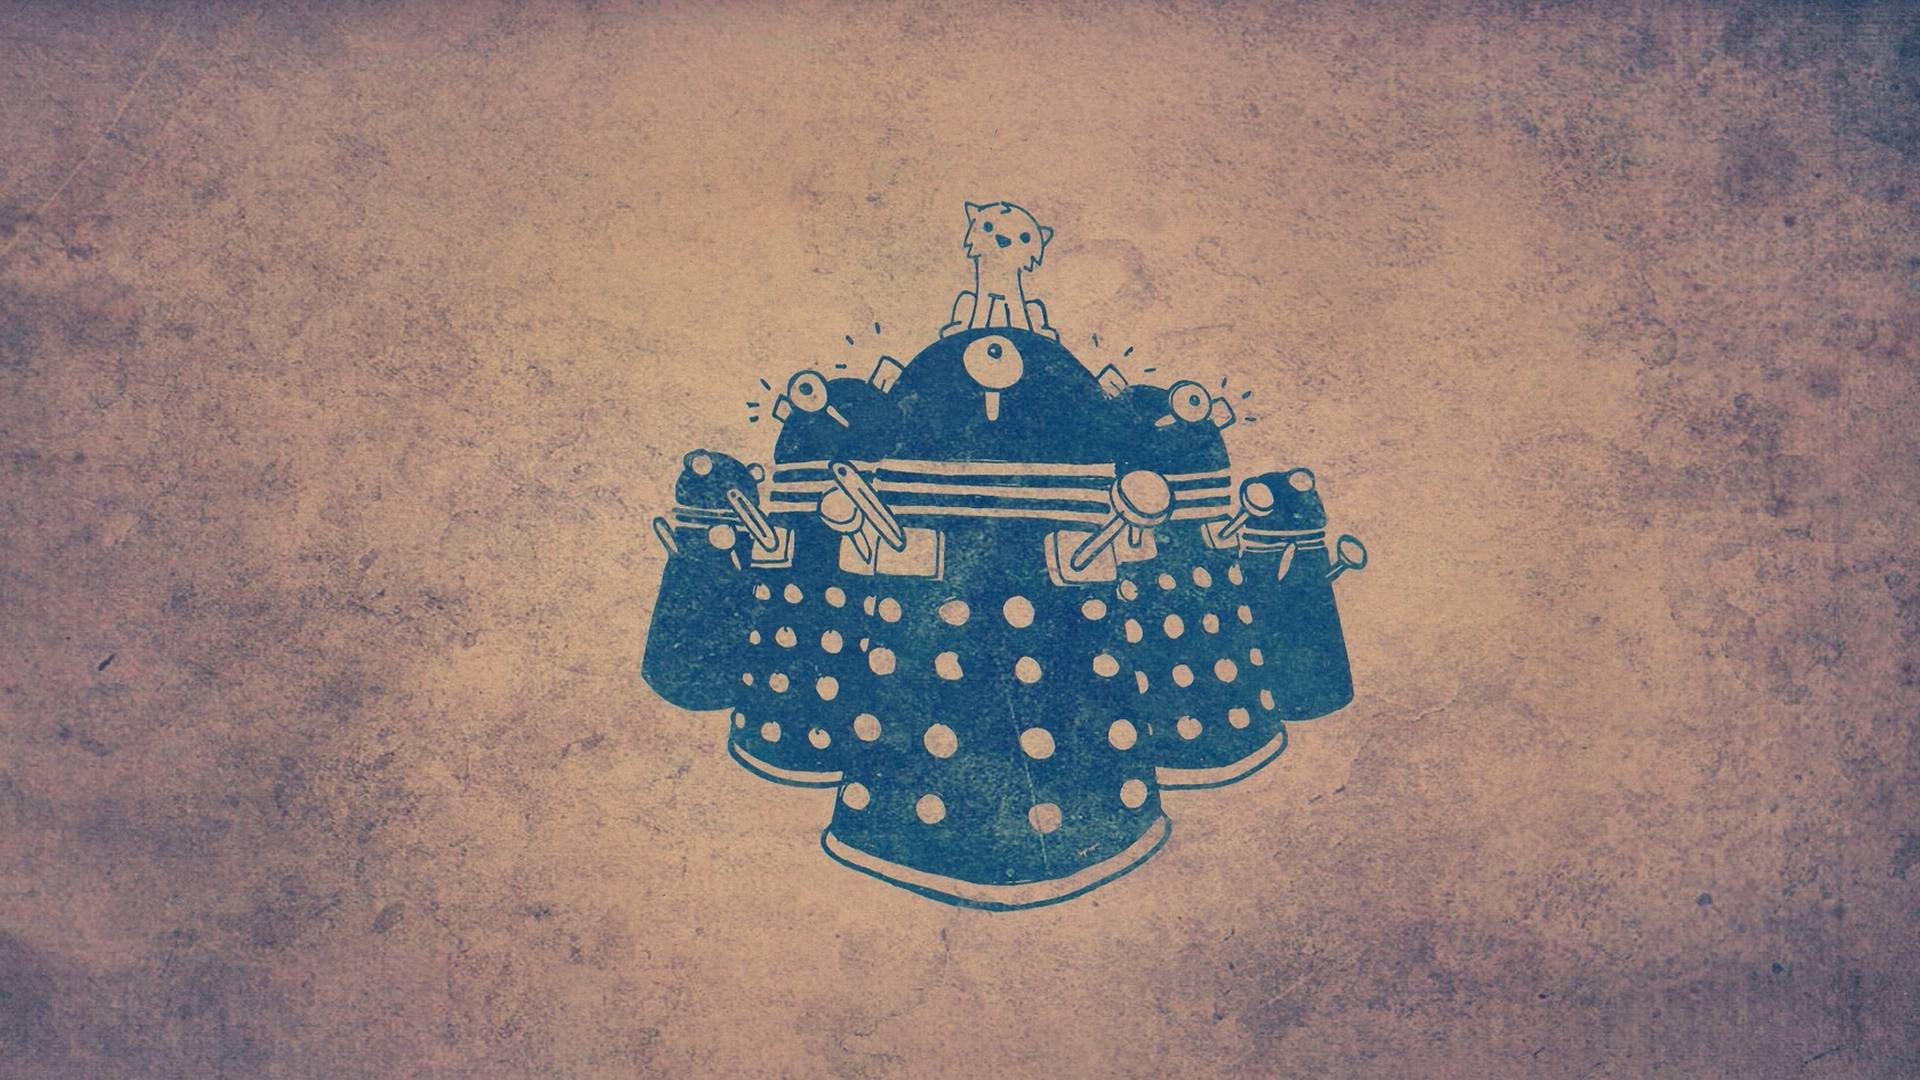 Wallpaper For > Doctor Who Dalek Wallpaper